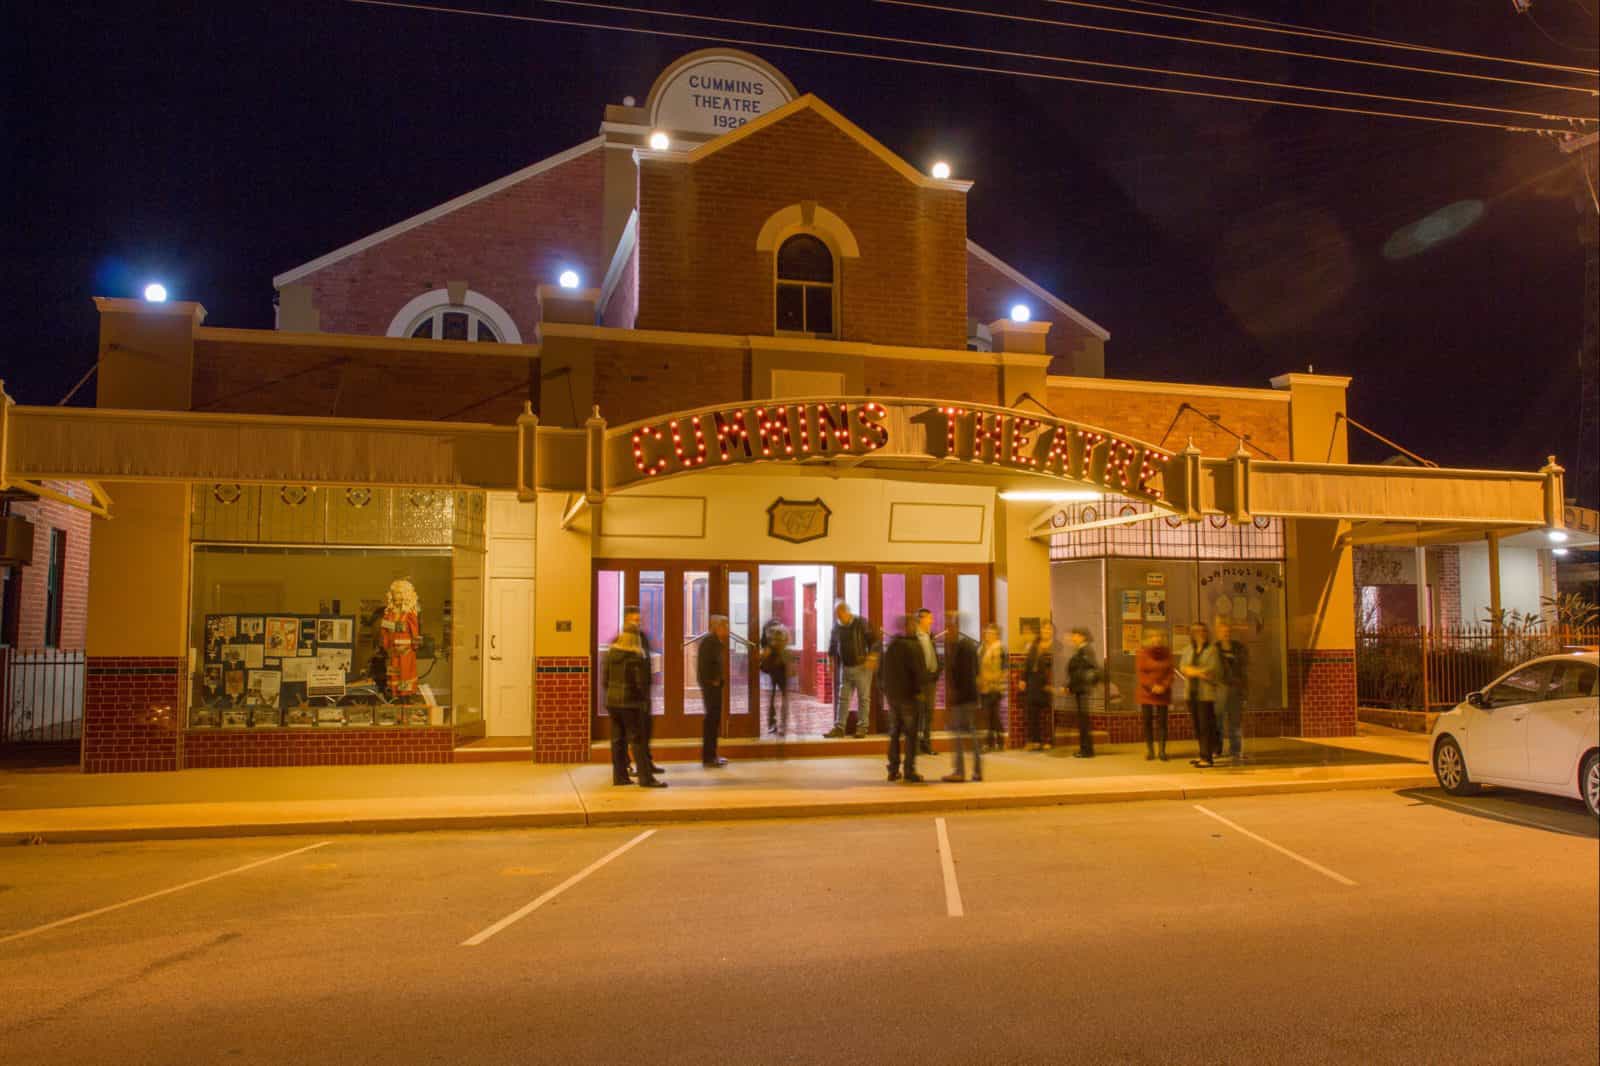 Cummins Theatre, Merredin, Western Australia